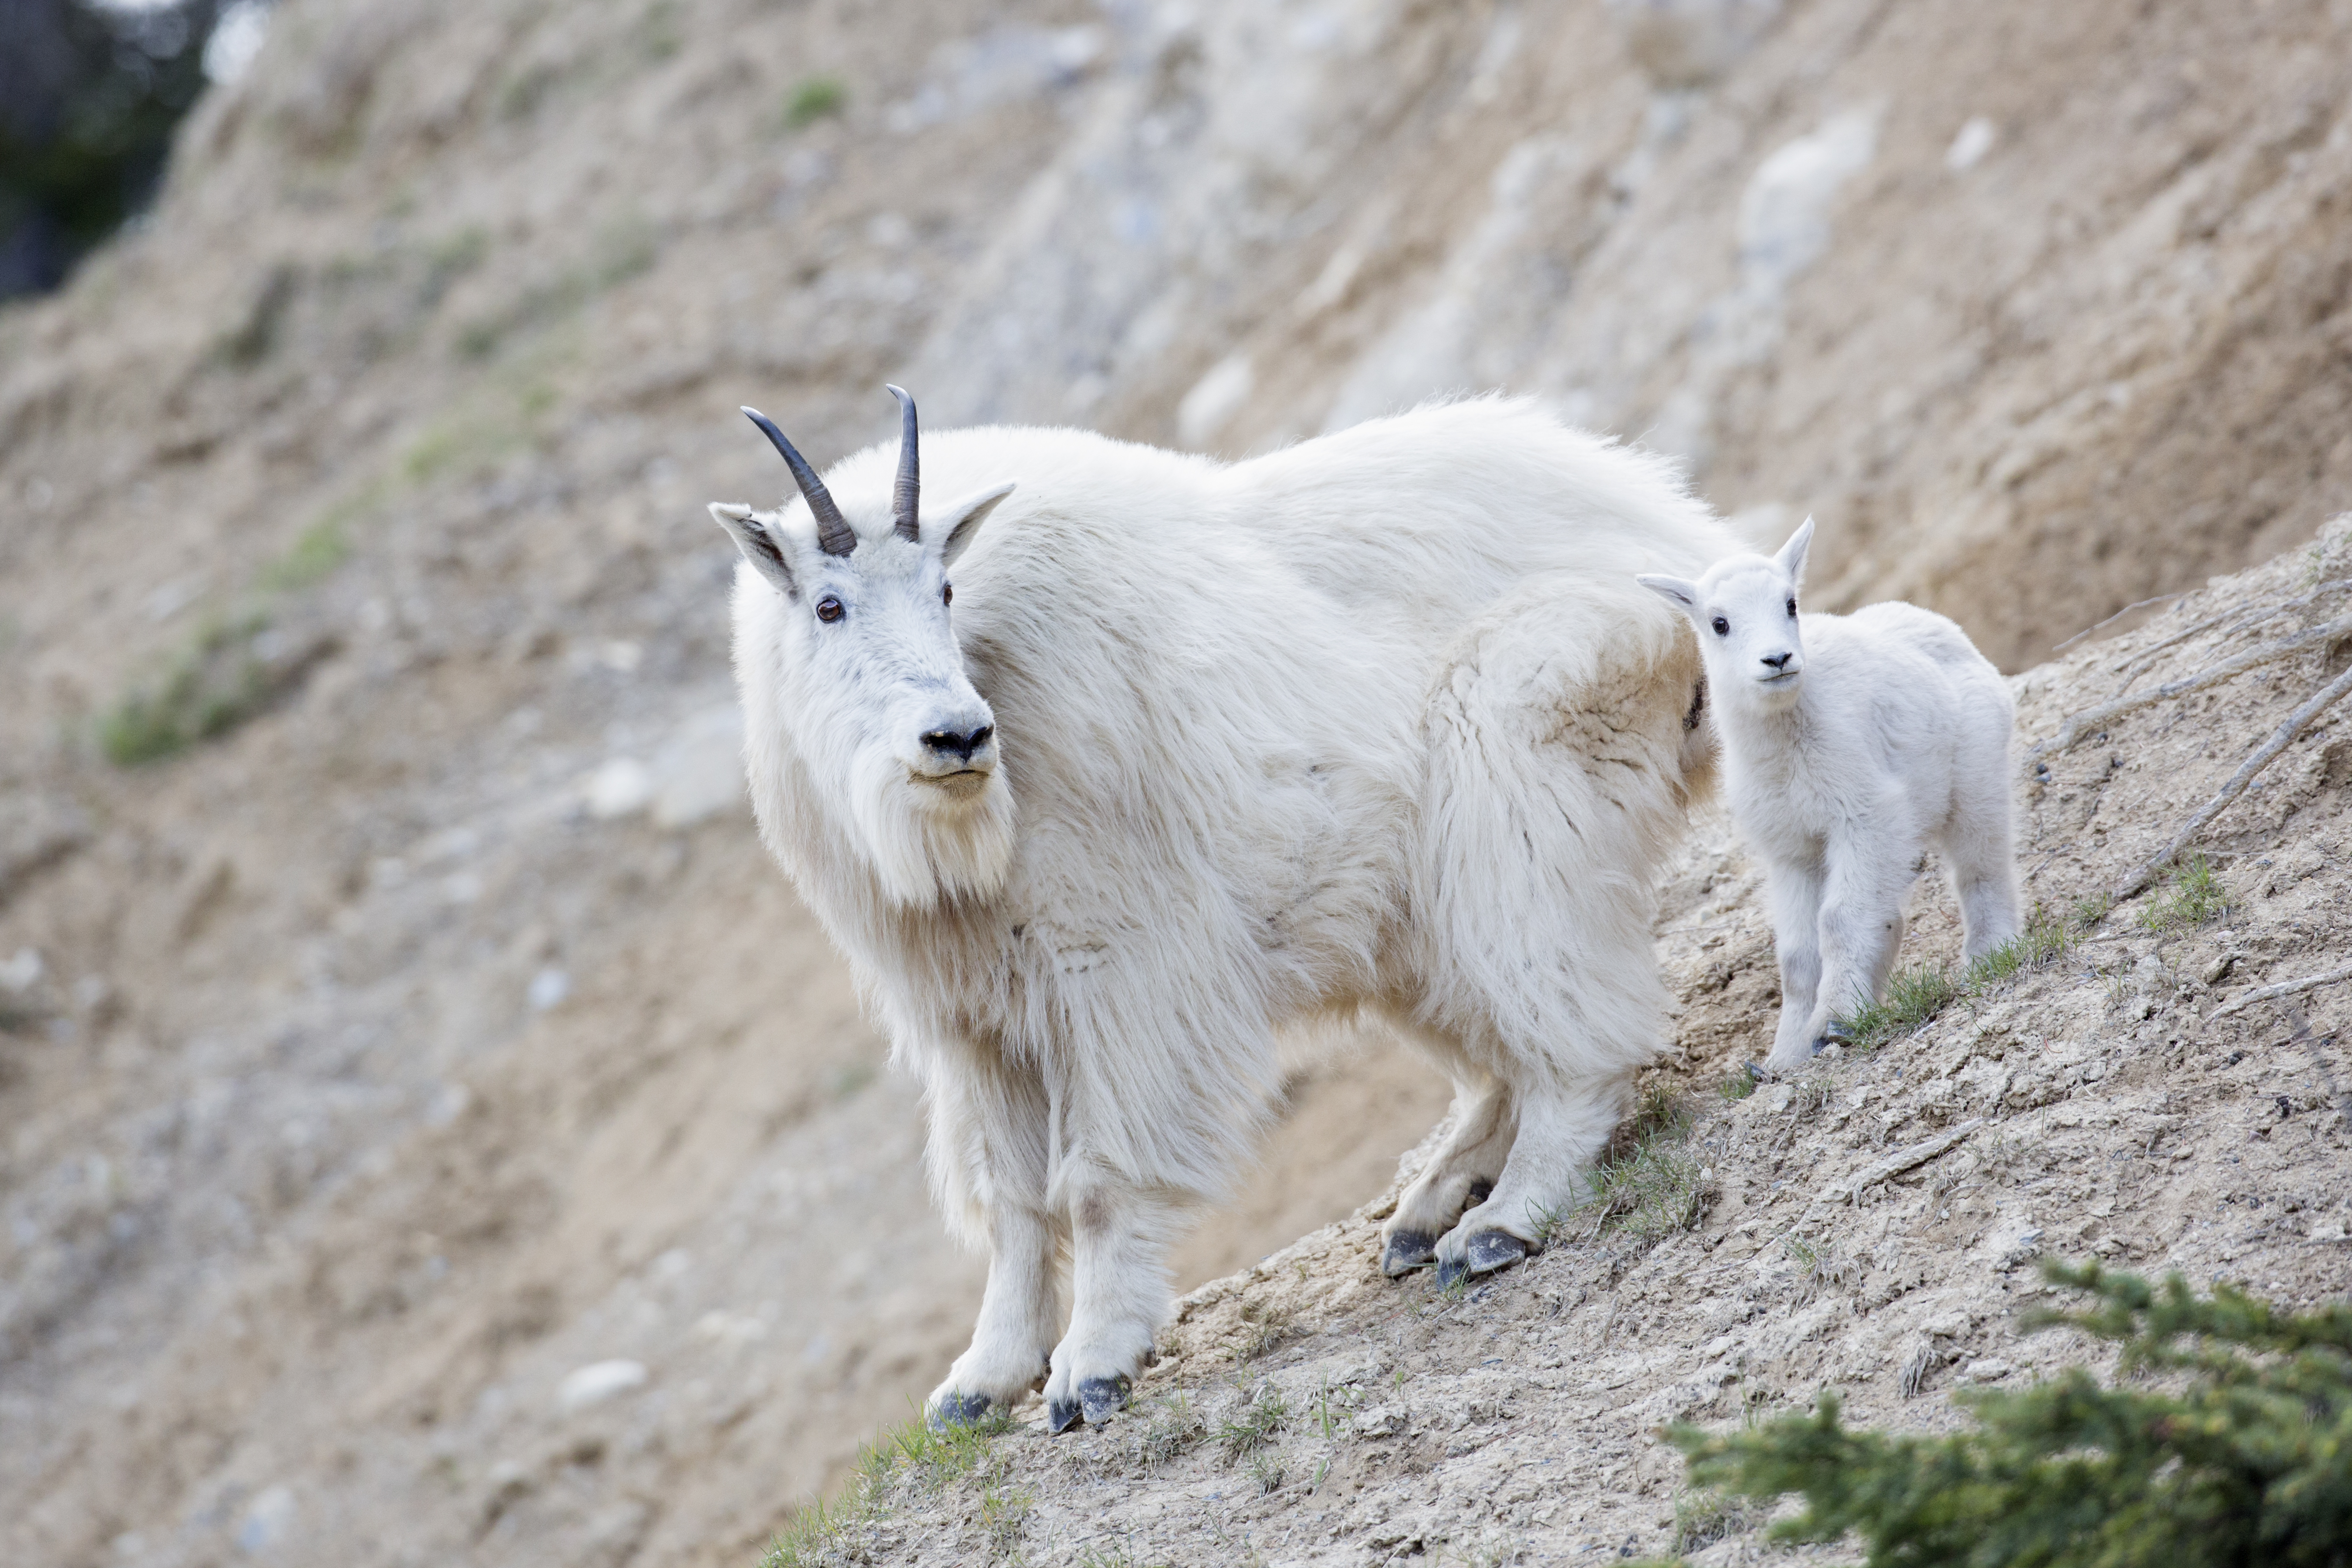 Mountain goat nanny and kid (John E. Marriott).